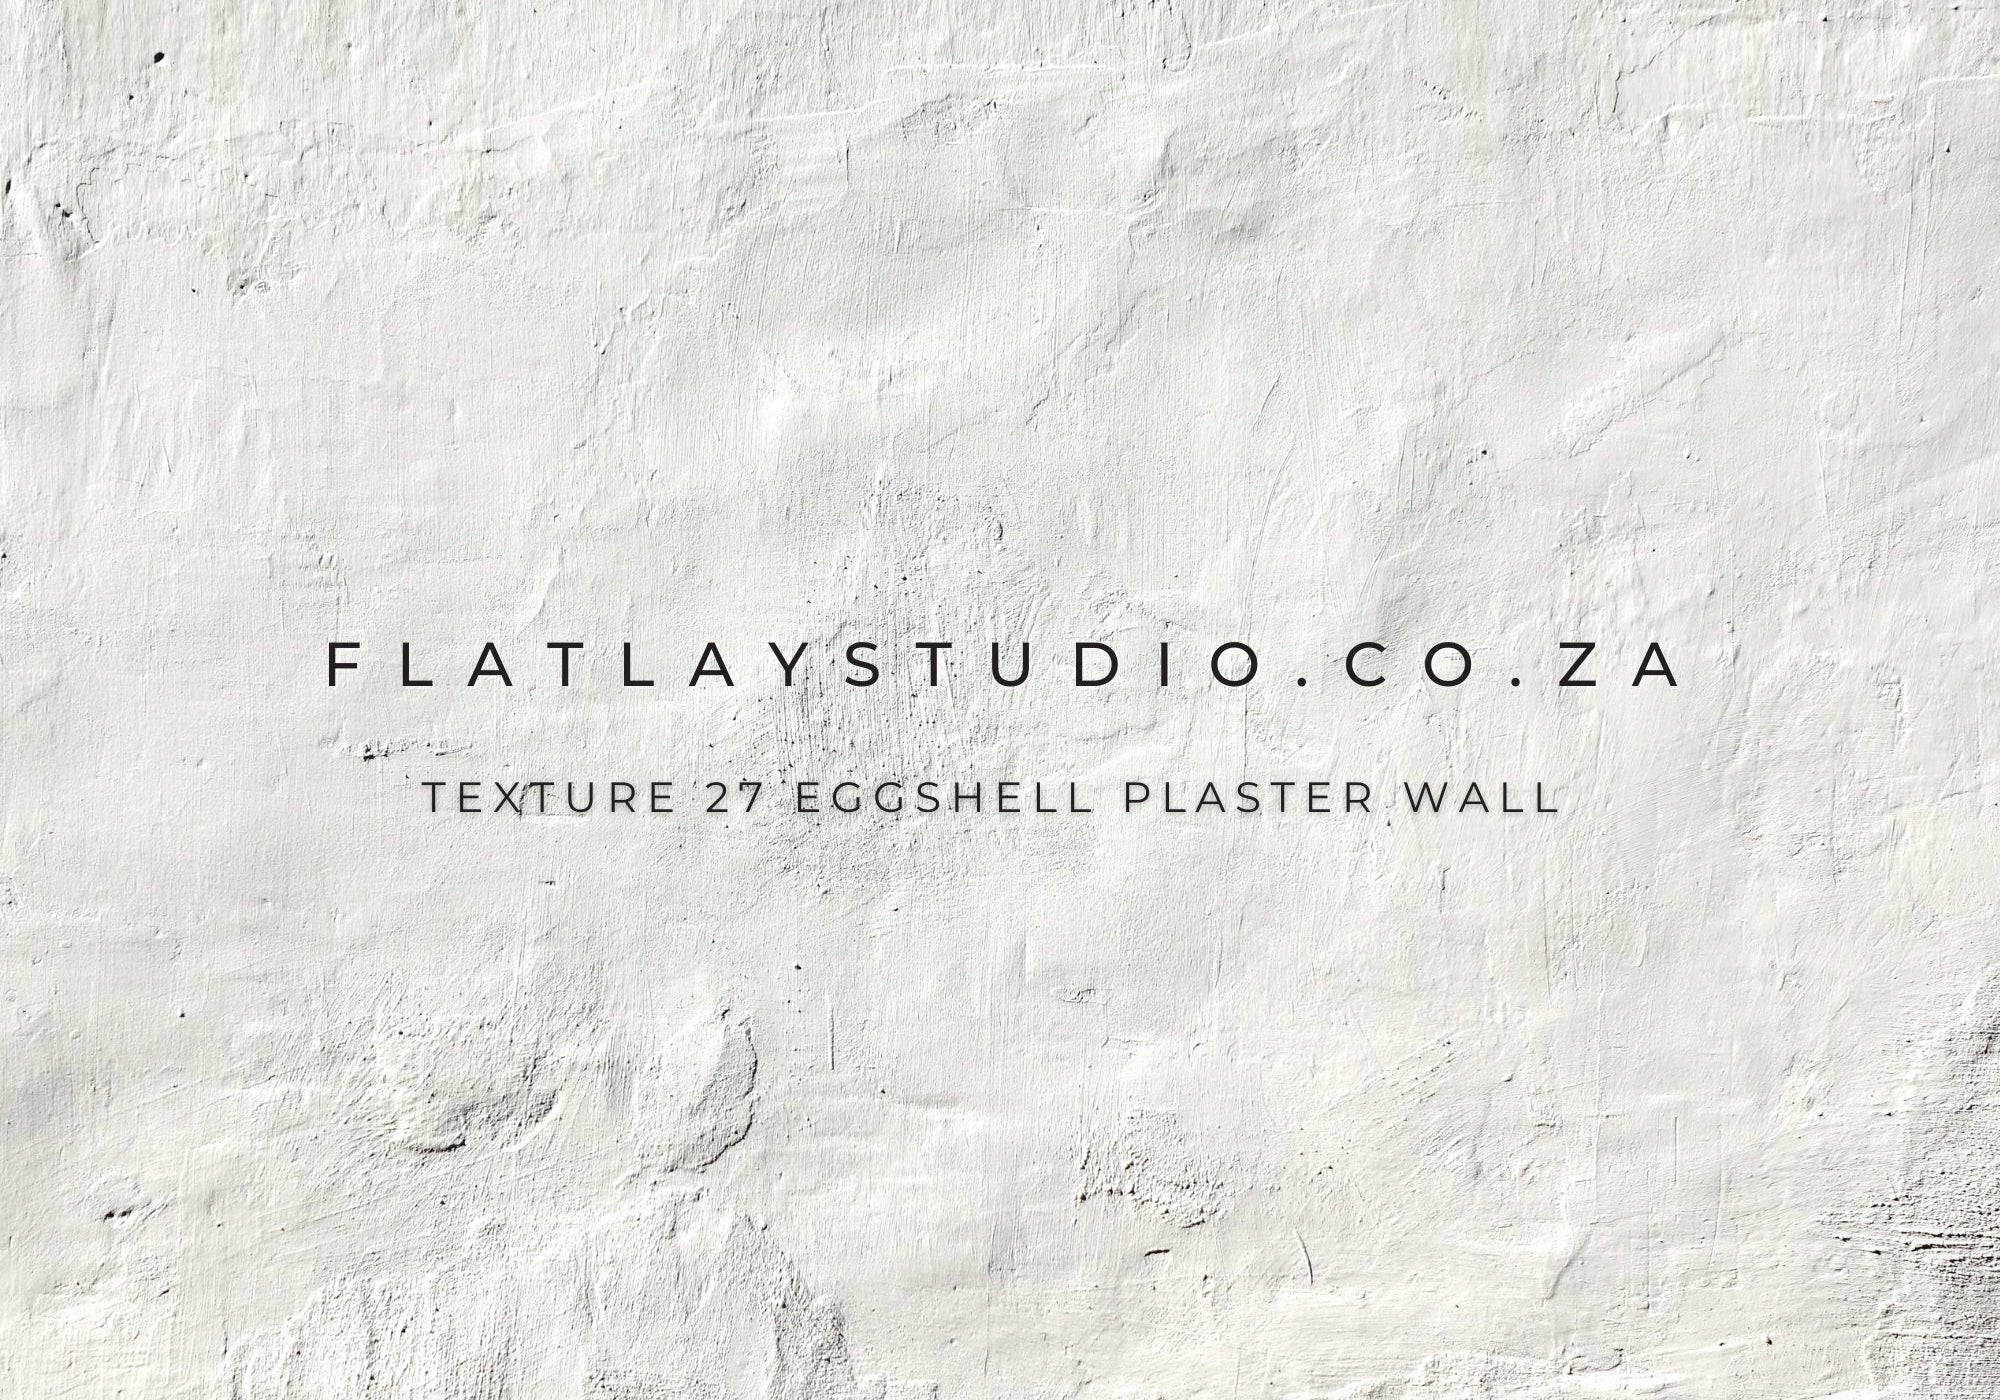 Texture 27 Eggshell Plaster Wall - FlatlayStudio Flatlay Styling Board